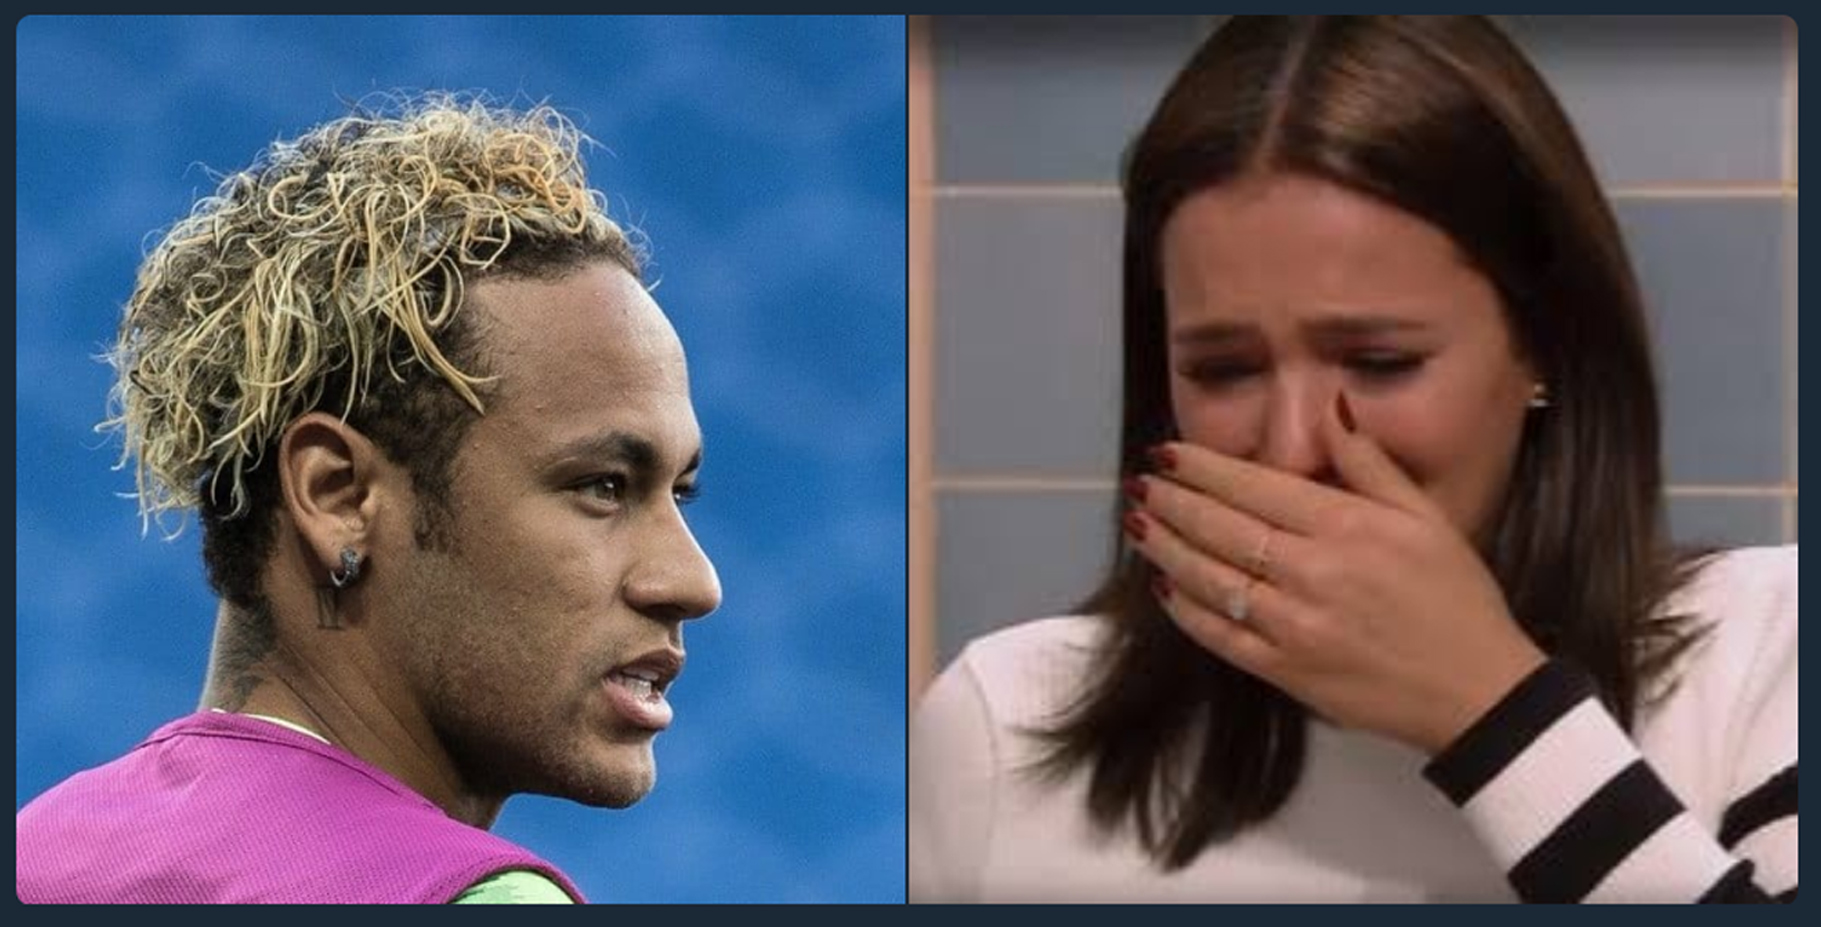 O novo penteado de Neymar inspirou diversos memes na web, veja alguns